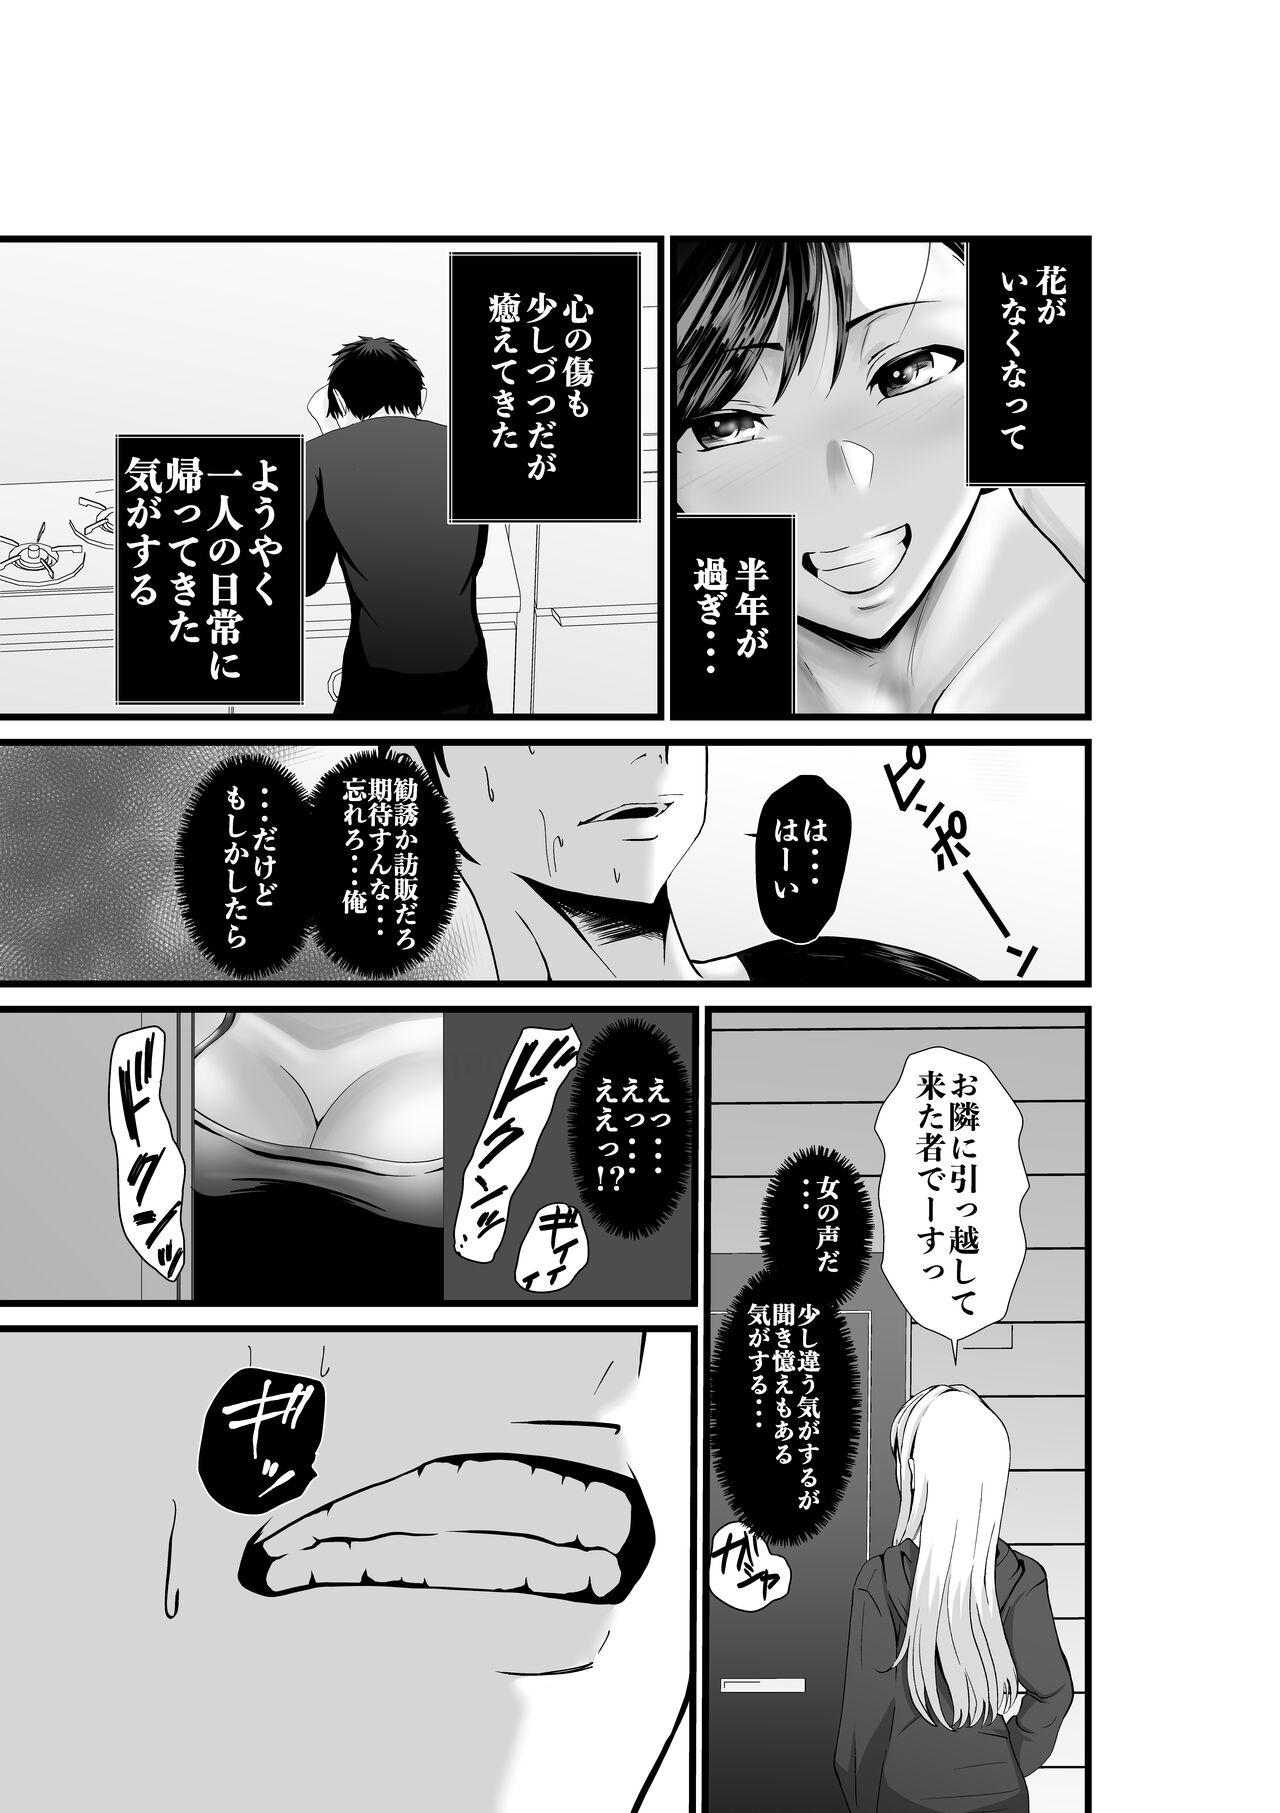 Bro Otonari-san, Jibun no Dekachichi ga Buki ni Naru to Kizuite Shimau w 2 - Original Salope - Page 2